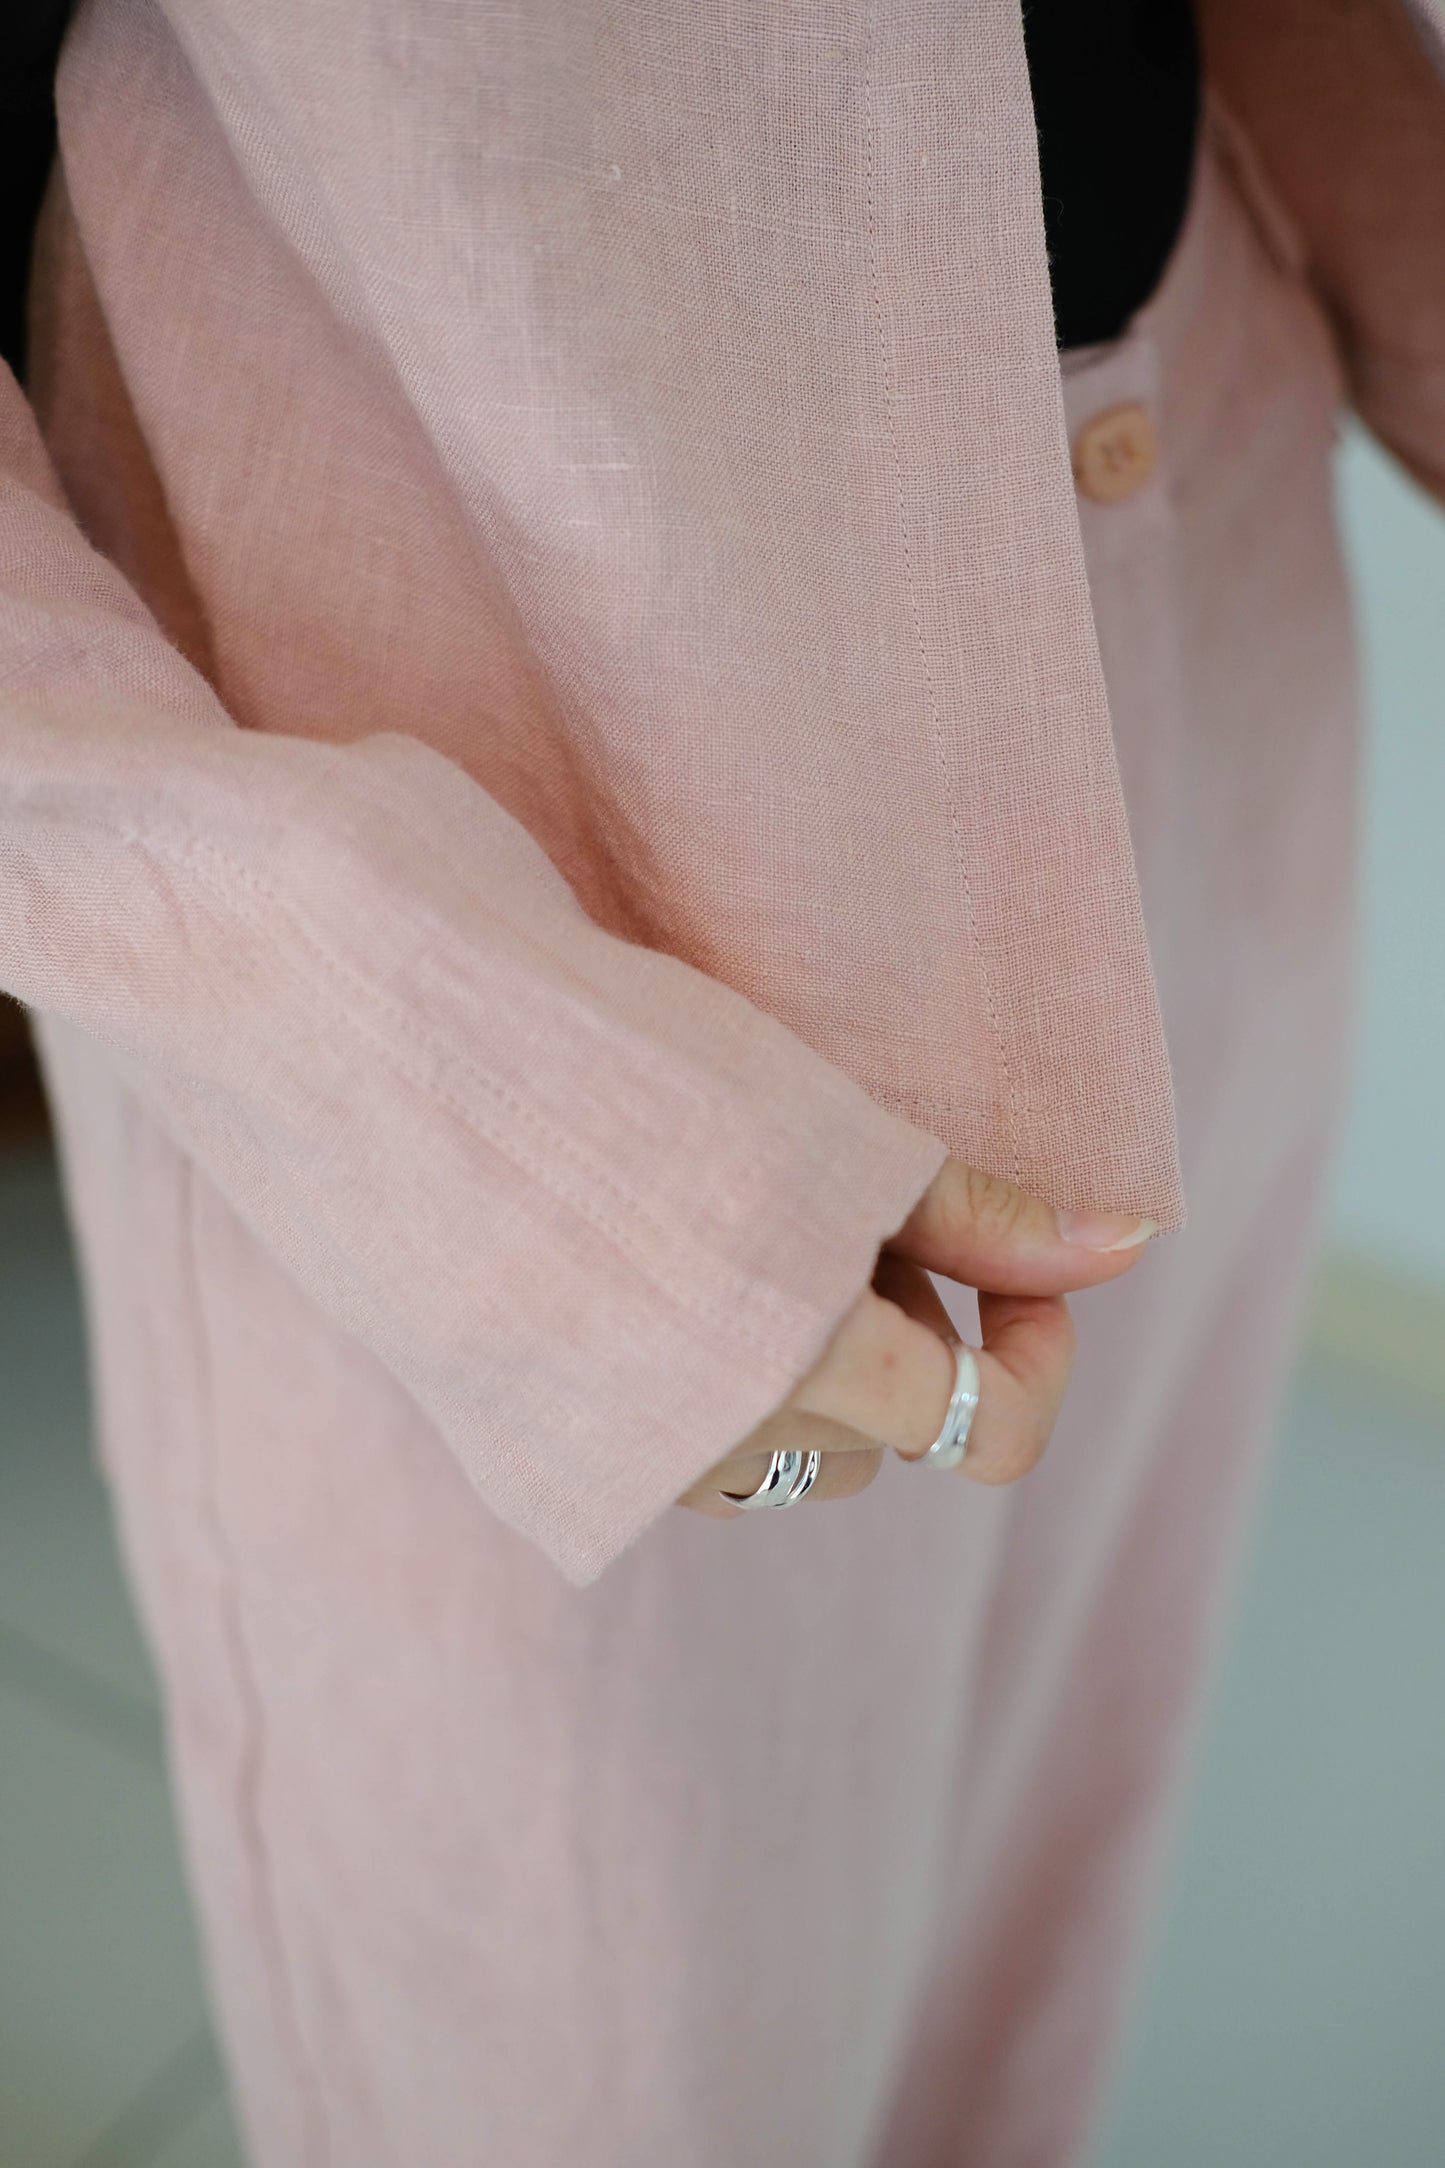 Round neck tie one button linen jacket in cherry blossom pink